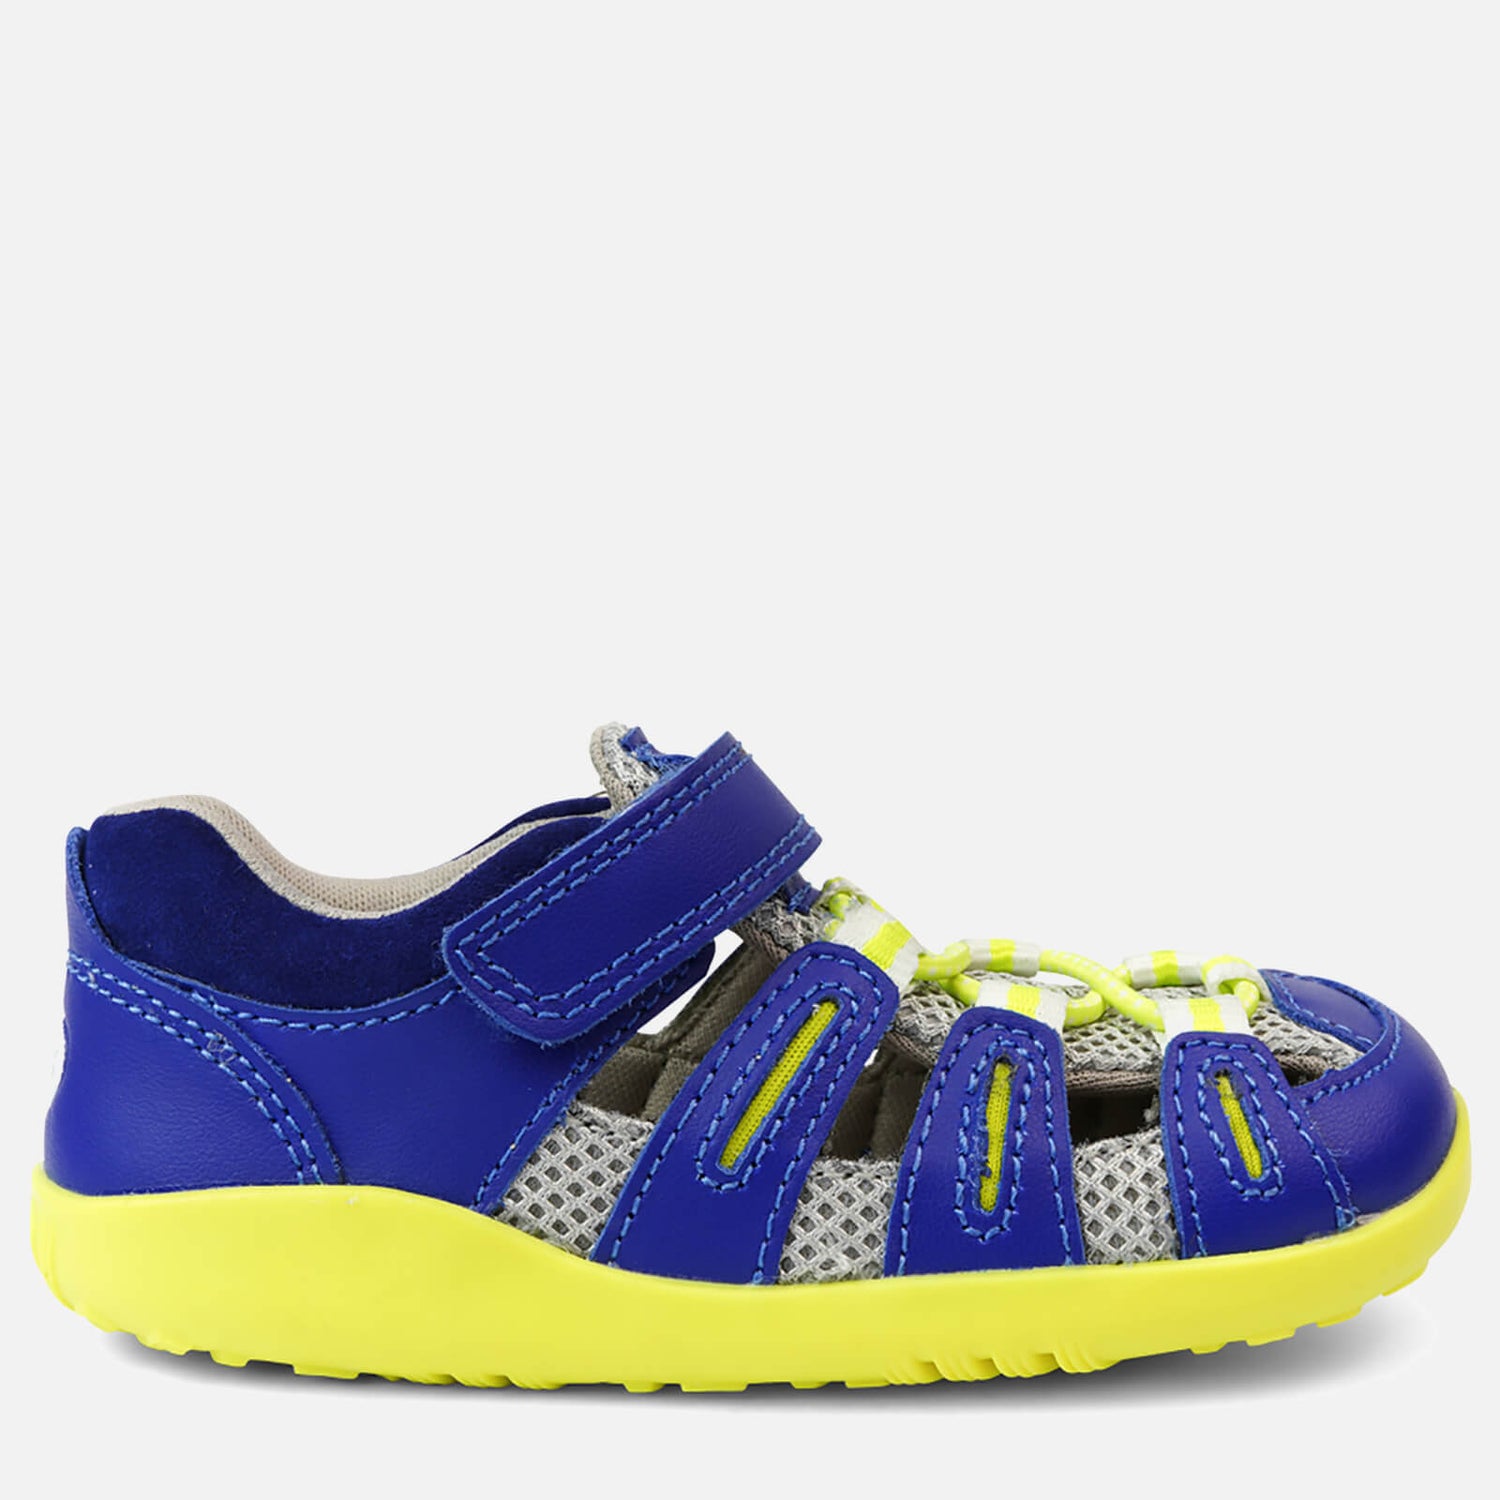 Bobux Boys' I-Walk Summit Water Shoes - Blueberry Neon - UK 6 Toddler